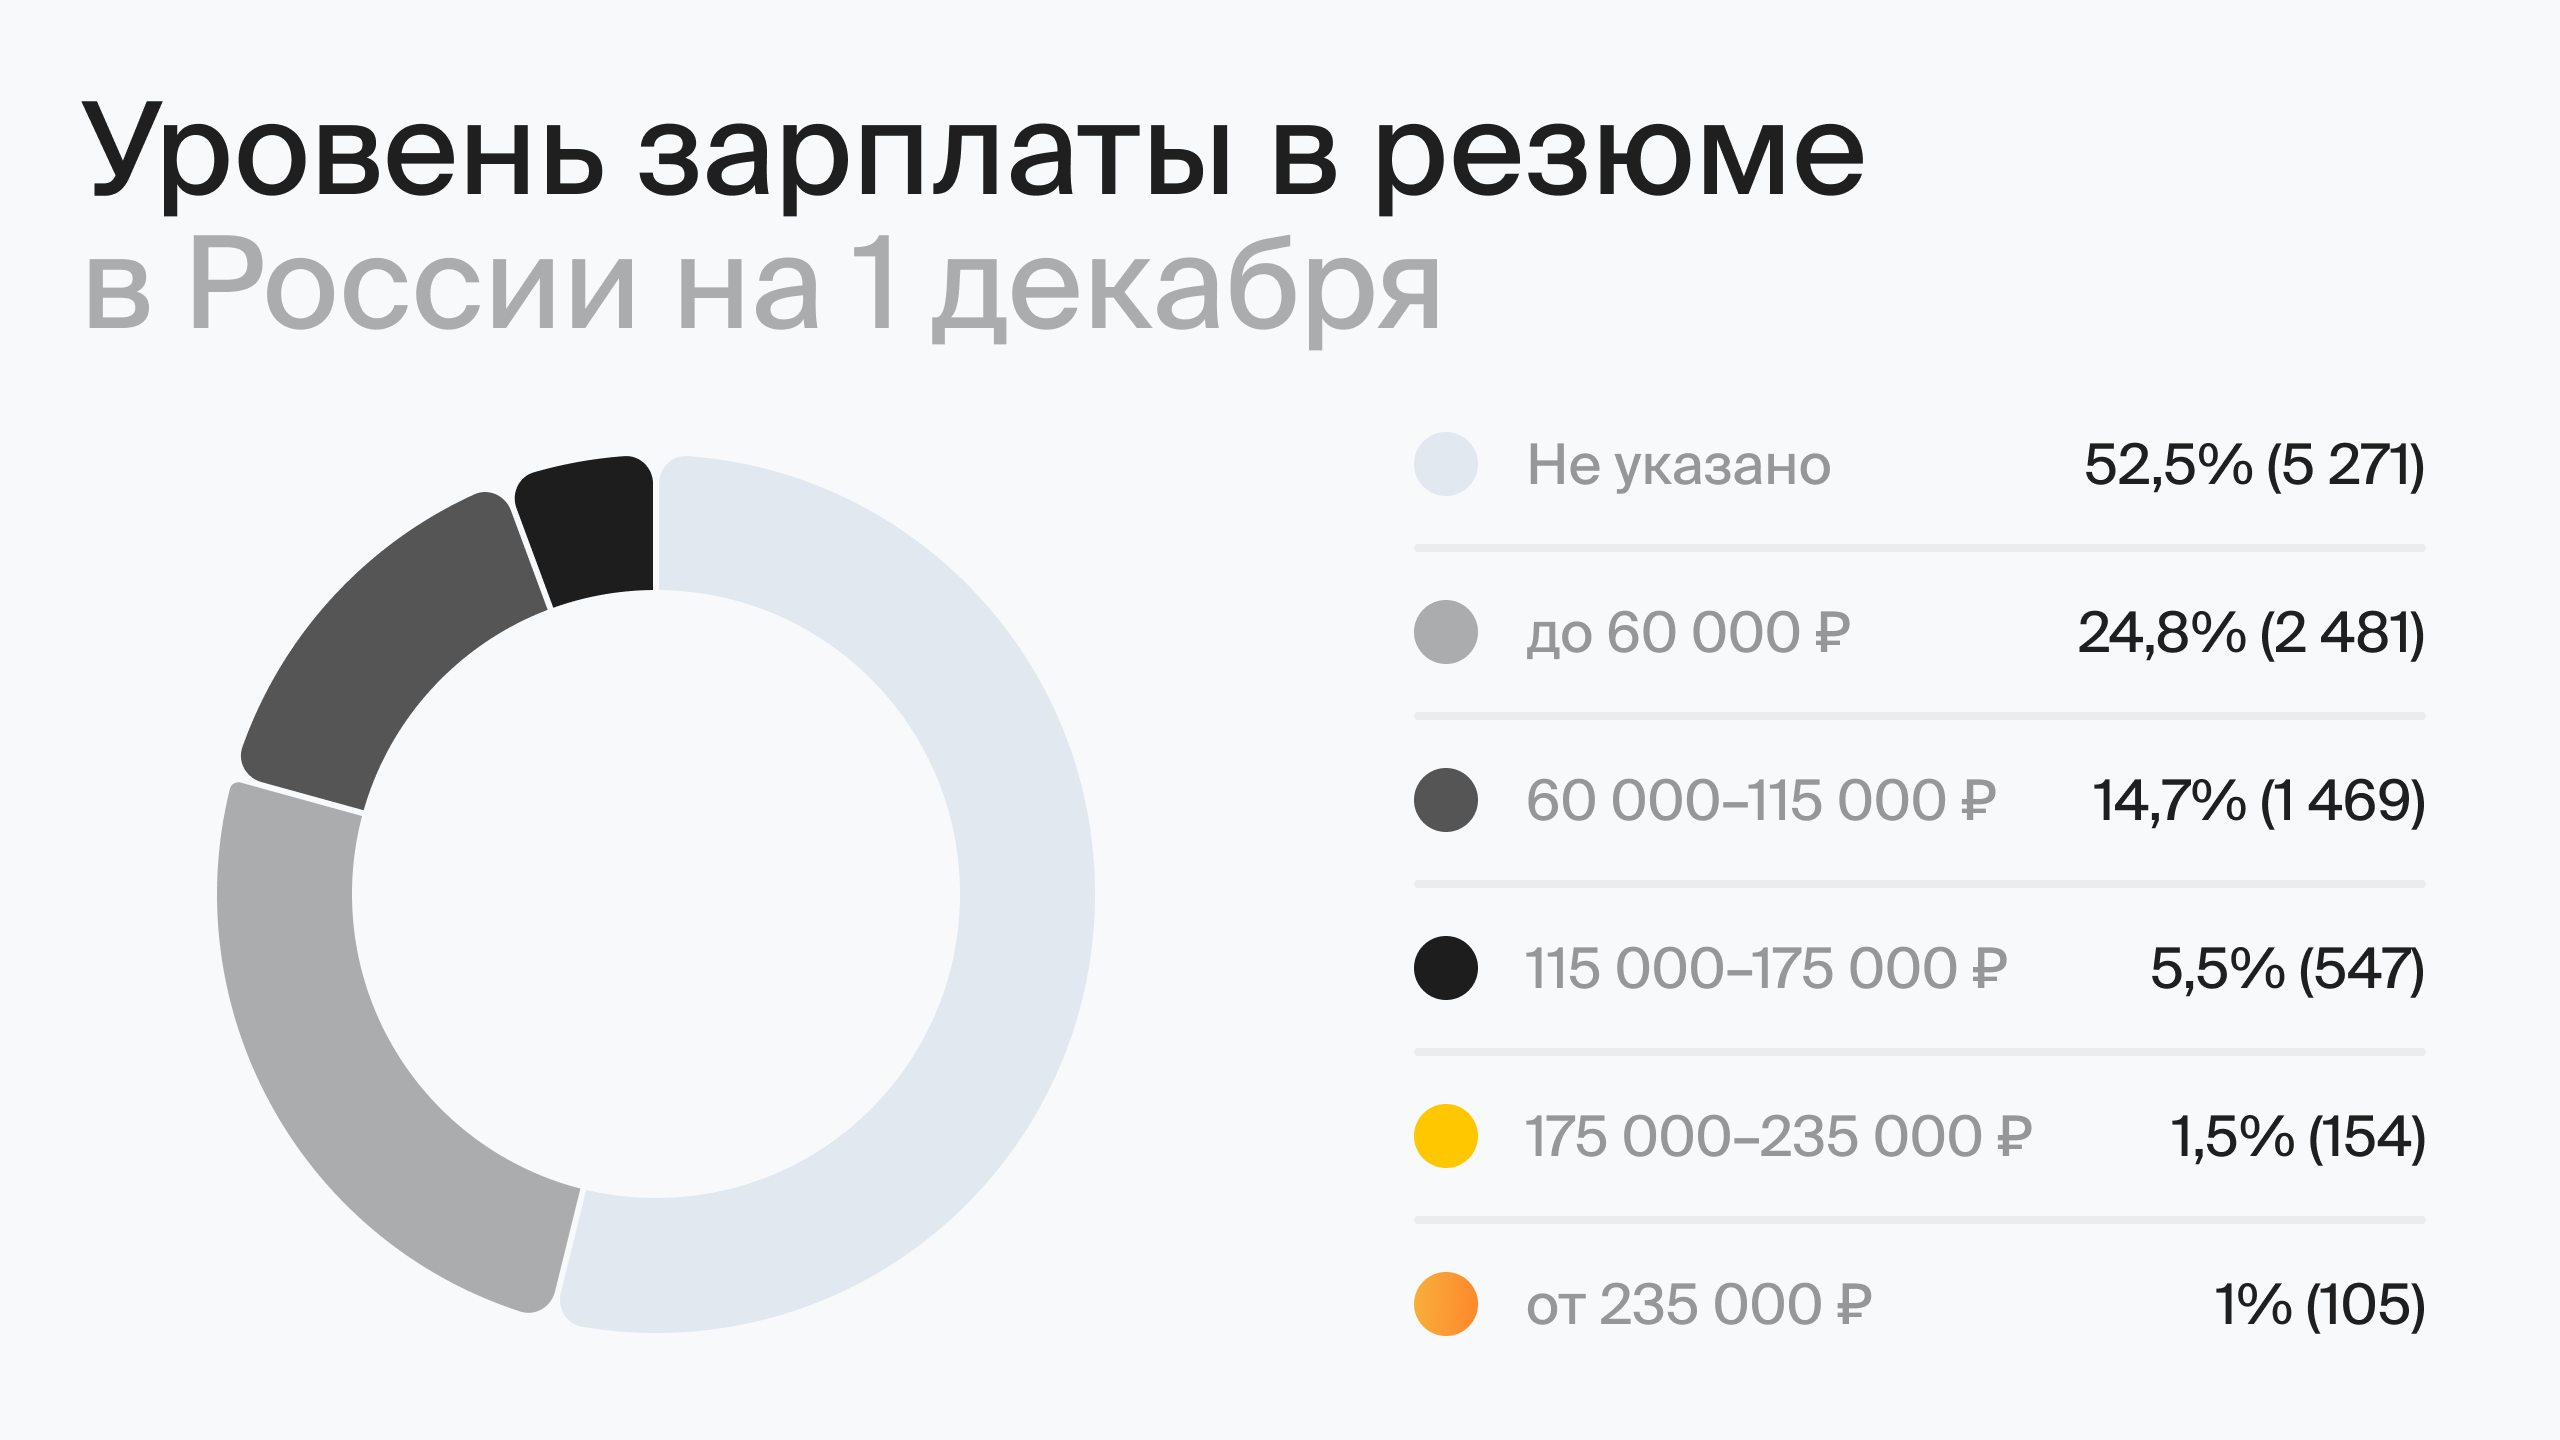 Уровень зарплаты в резюме в России на 1 декабря (по данным hh.ru)